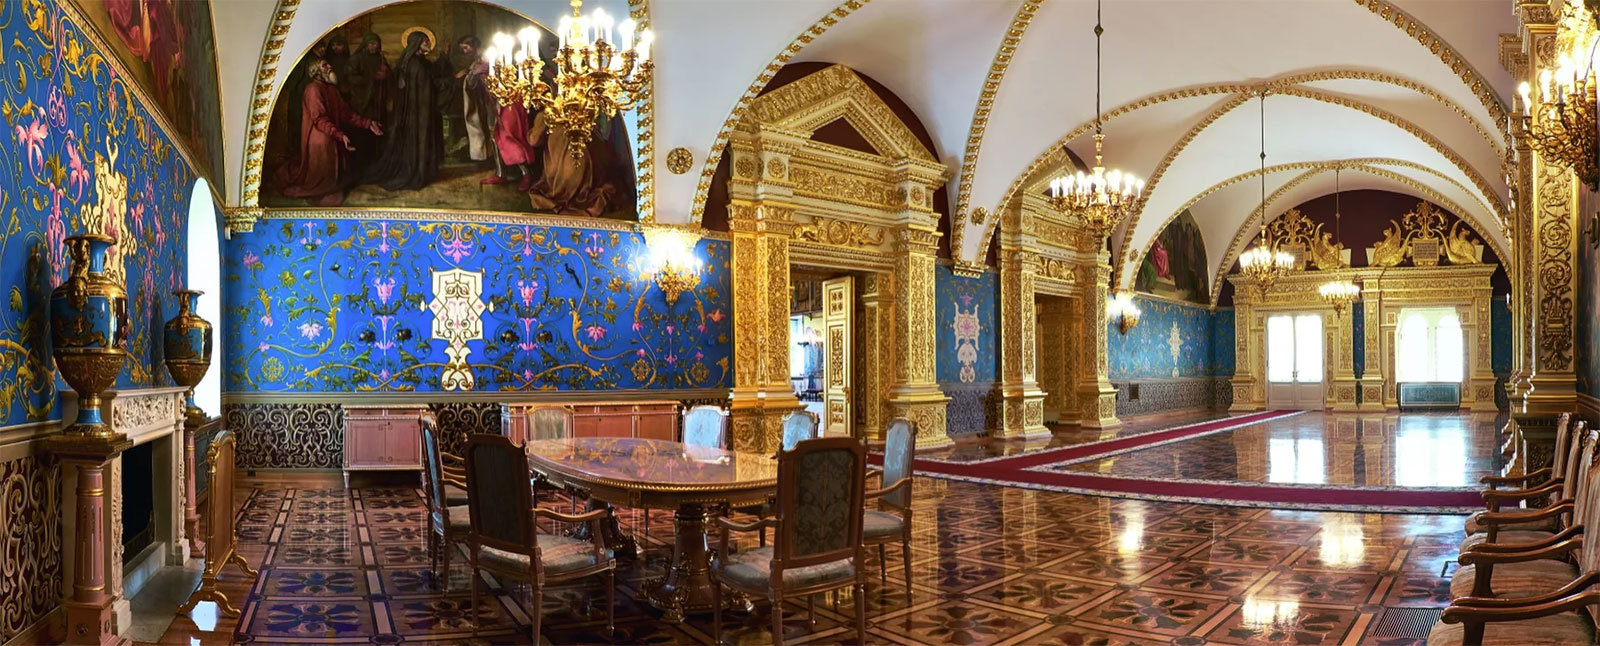 Сени Грановитой палаты Московского Кремля